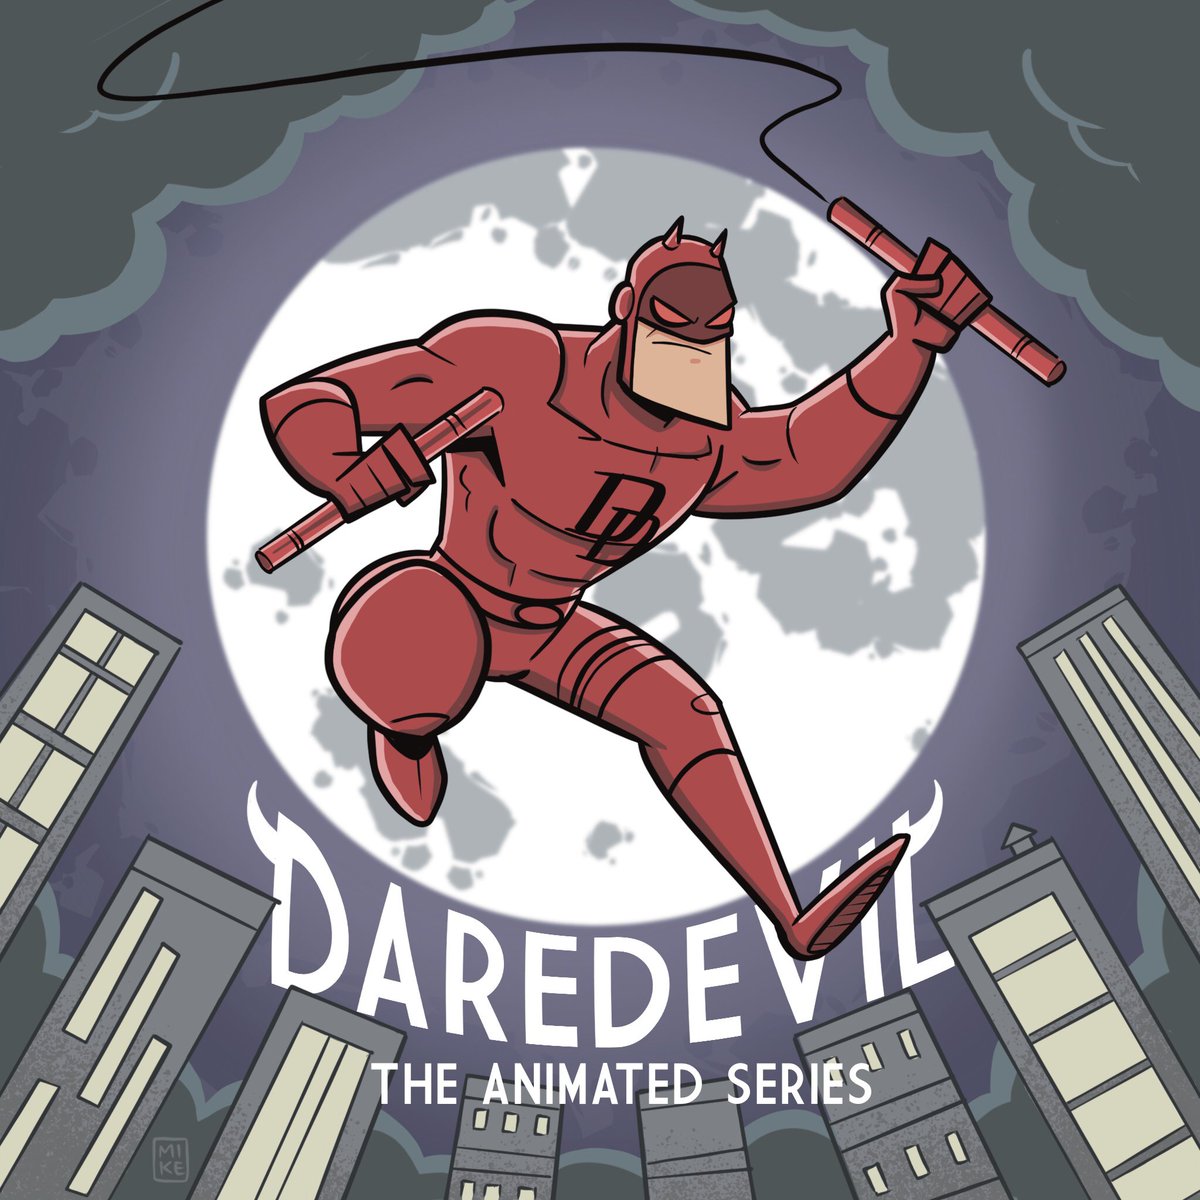 Daredevil for #MarvelMonday!
#daredevil #marvel #dd #comics